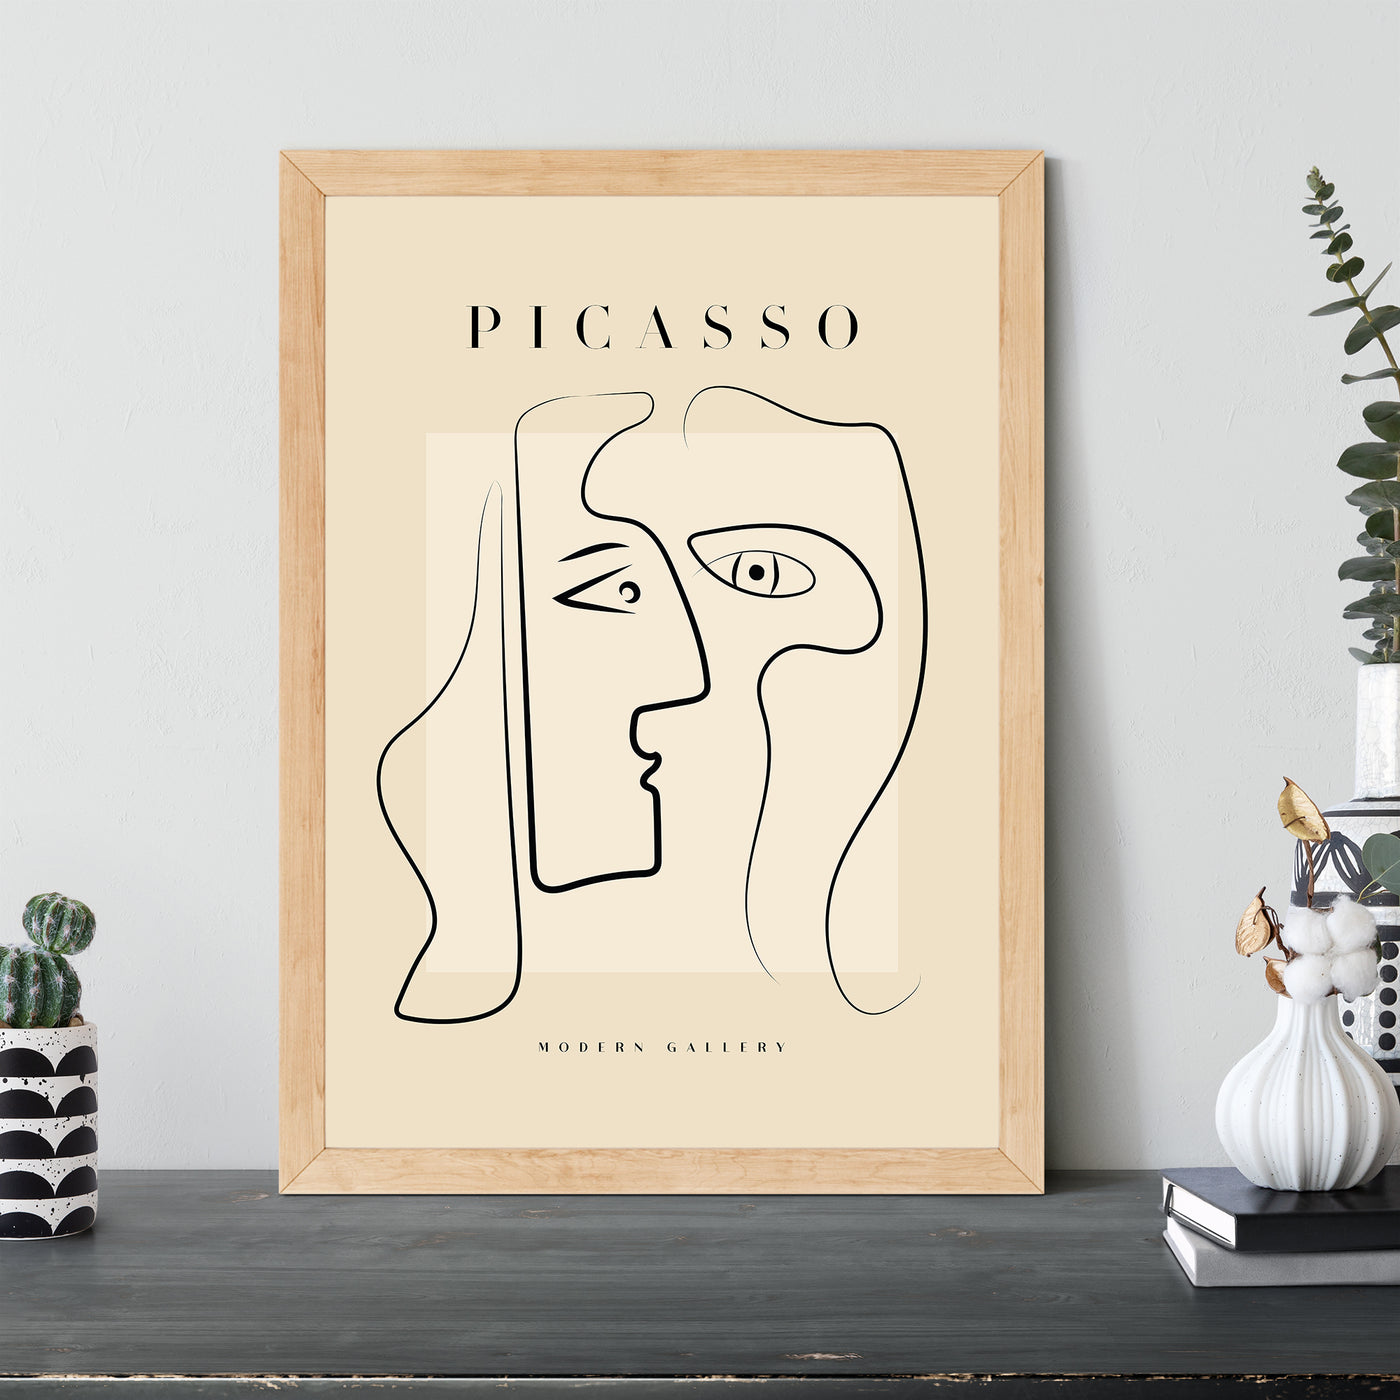 Pablo Picasso - #3